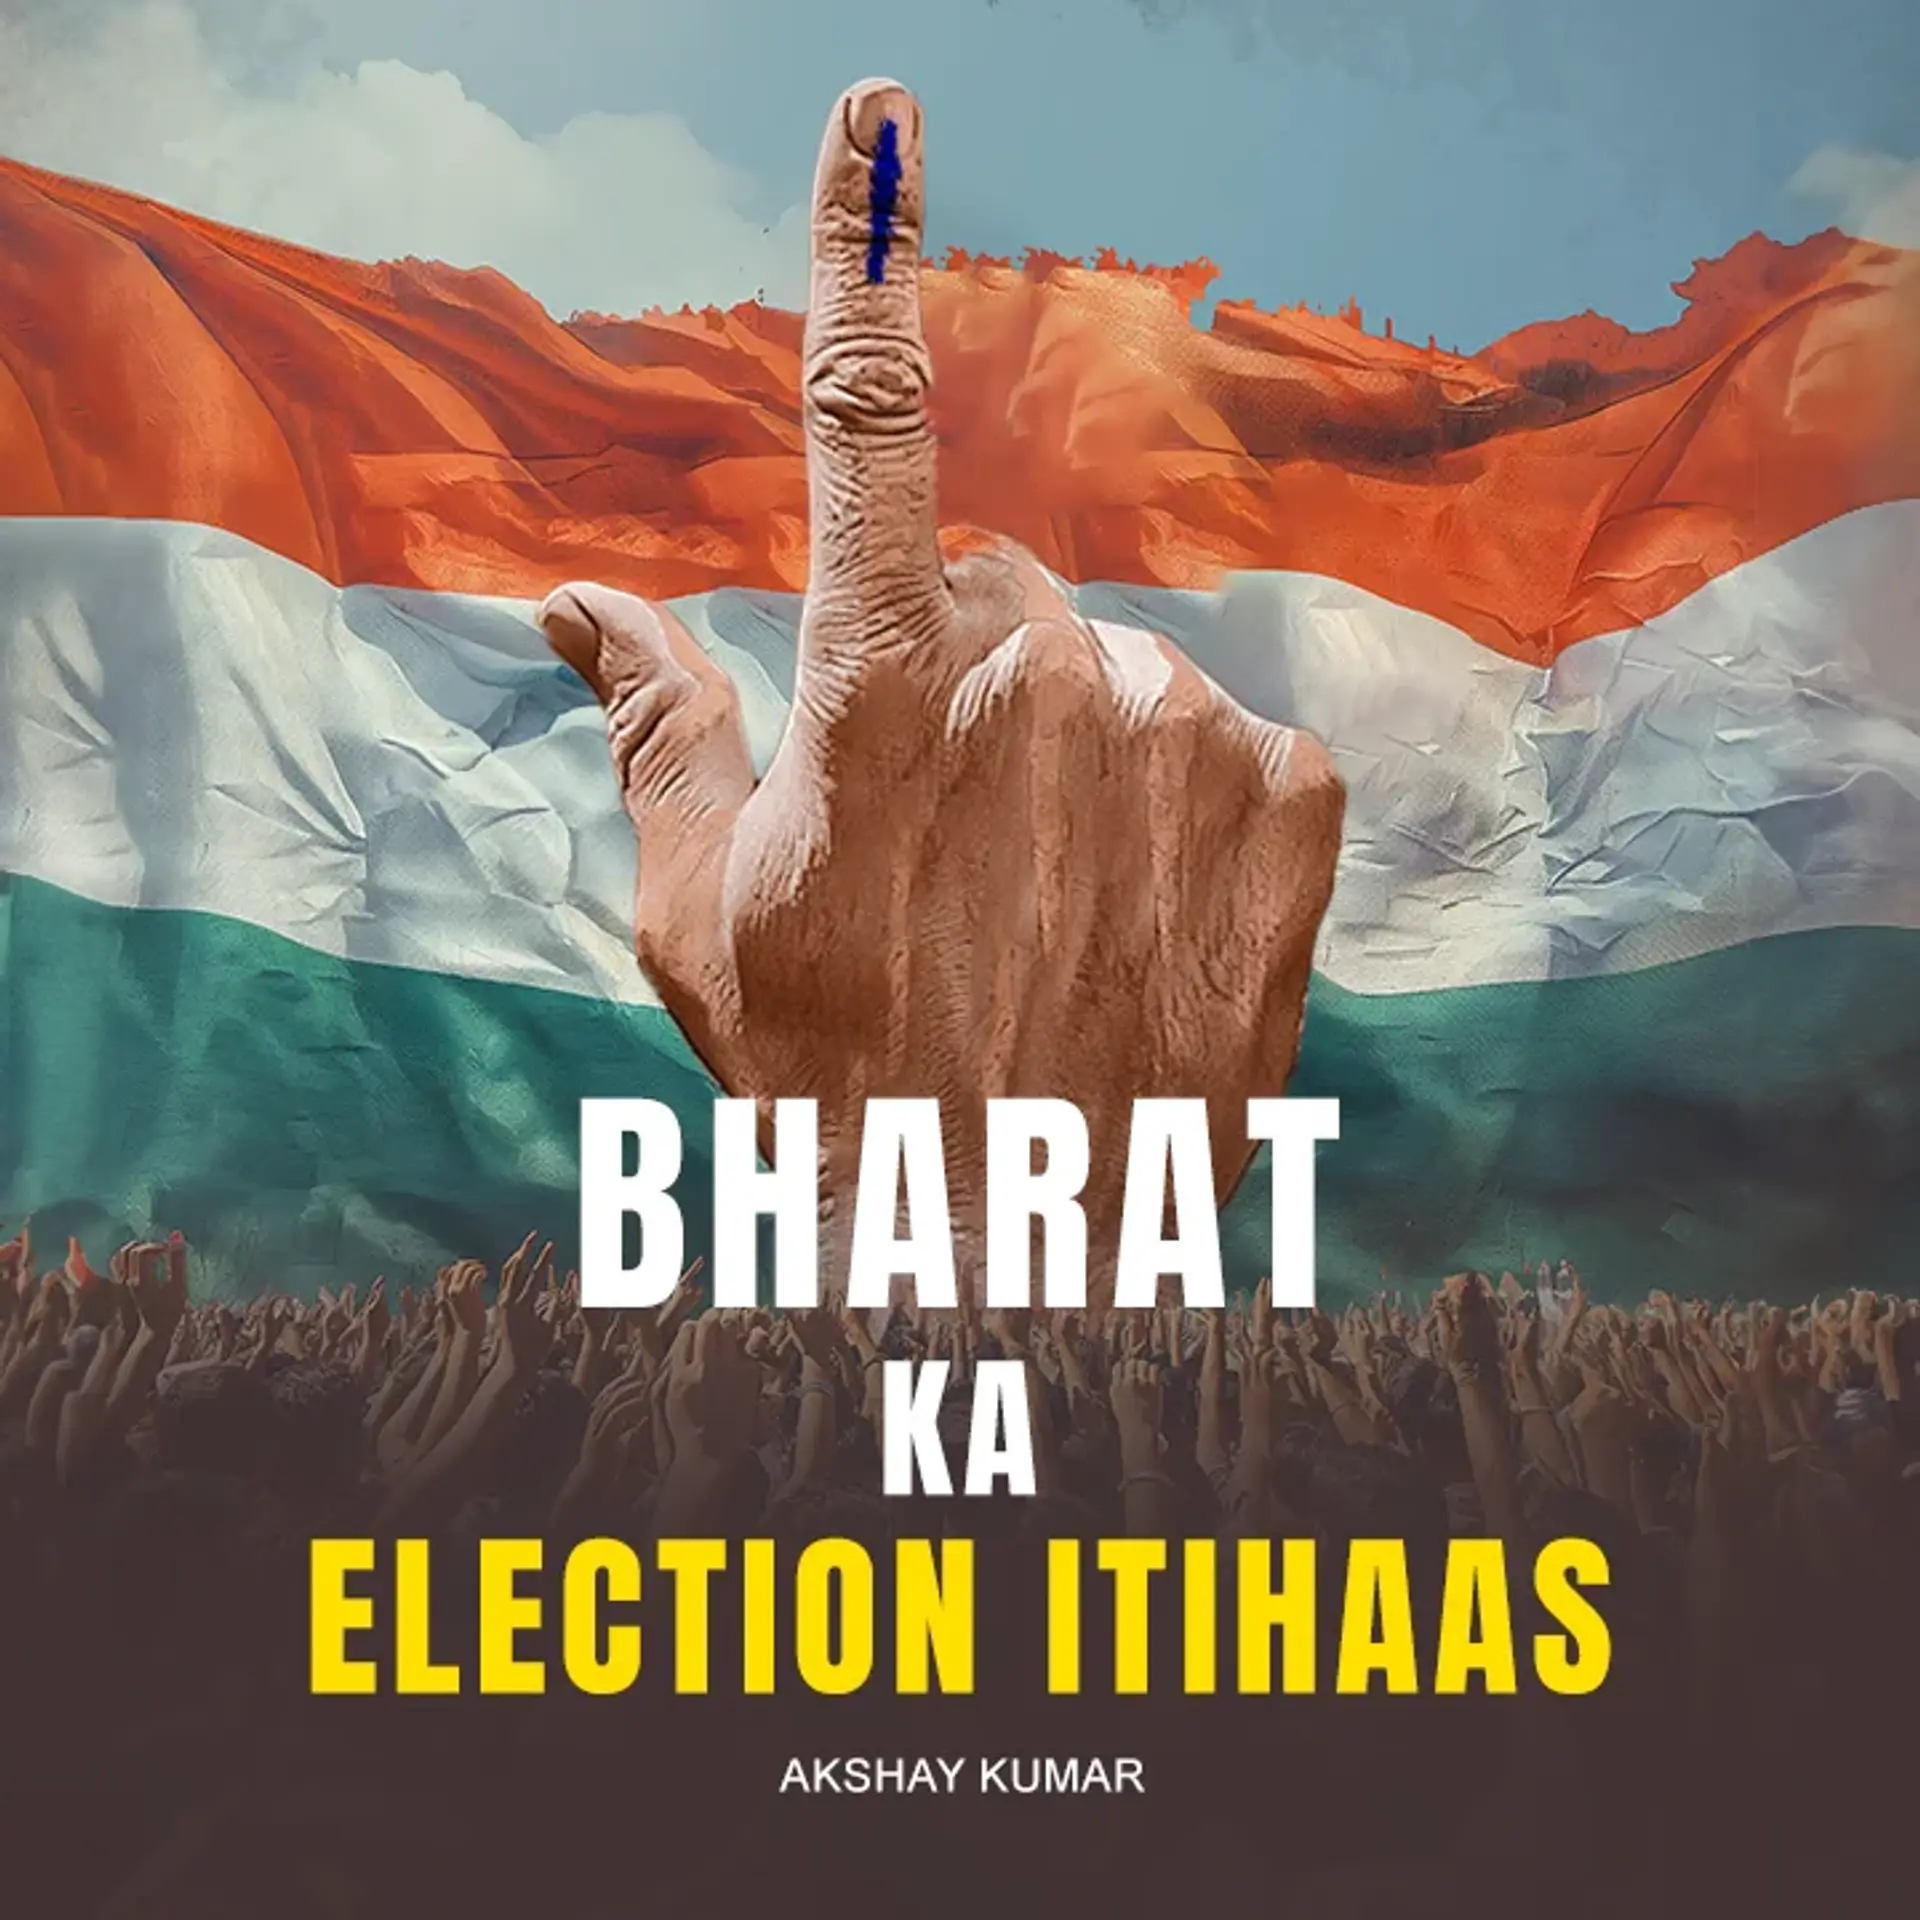 Bharat ka Election Itihaas | 